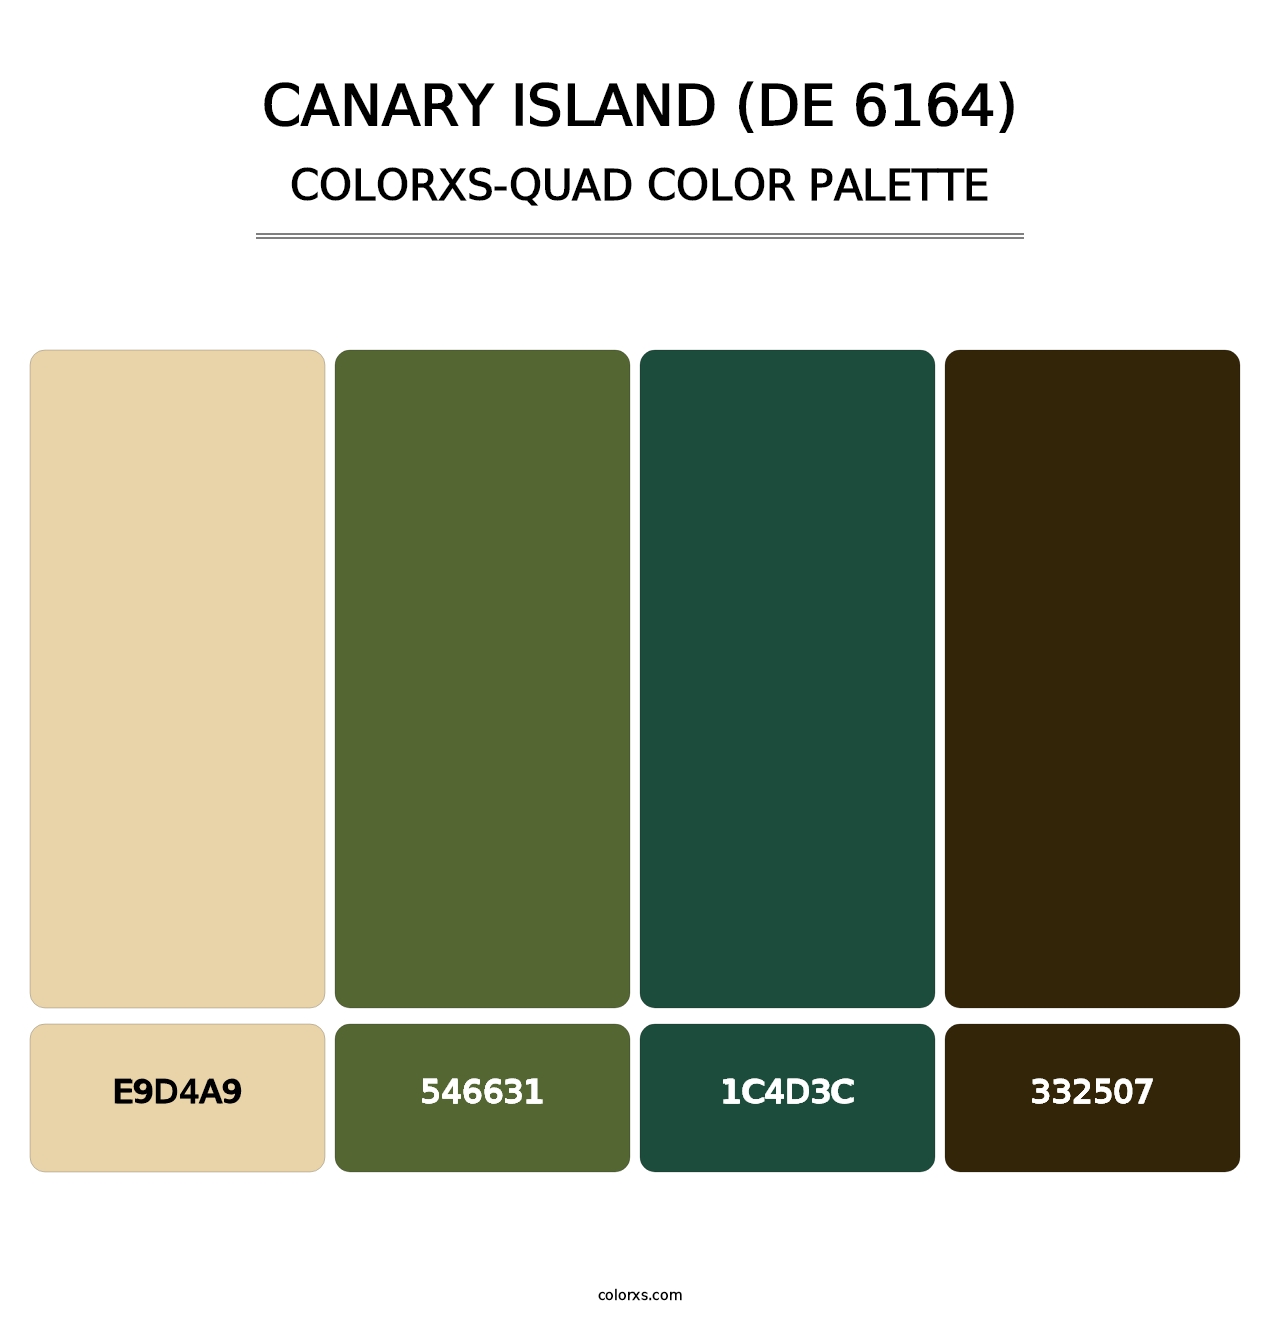 Canary Island (DE 6164) - Colorxs Quad Palette